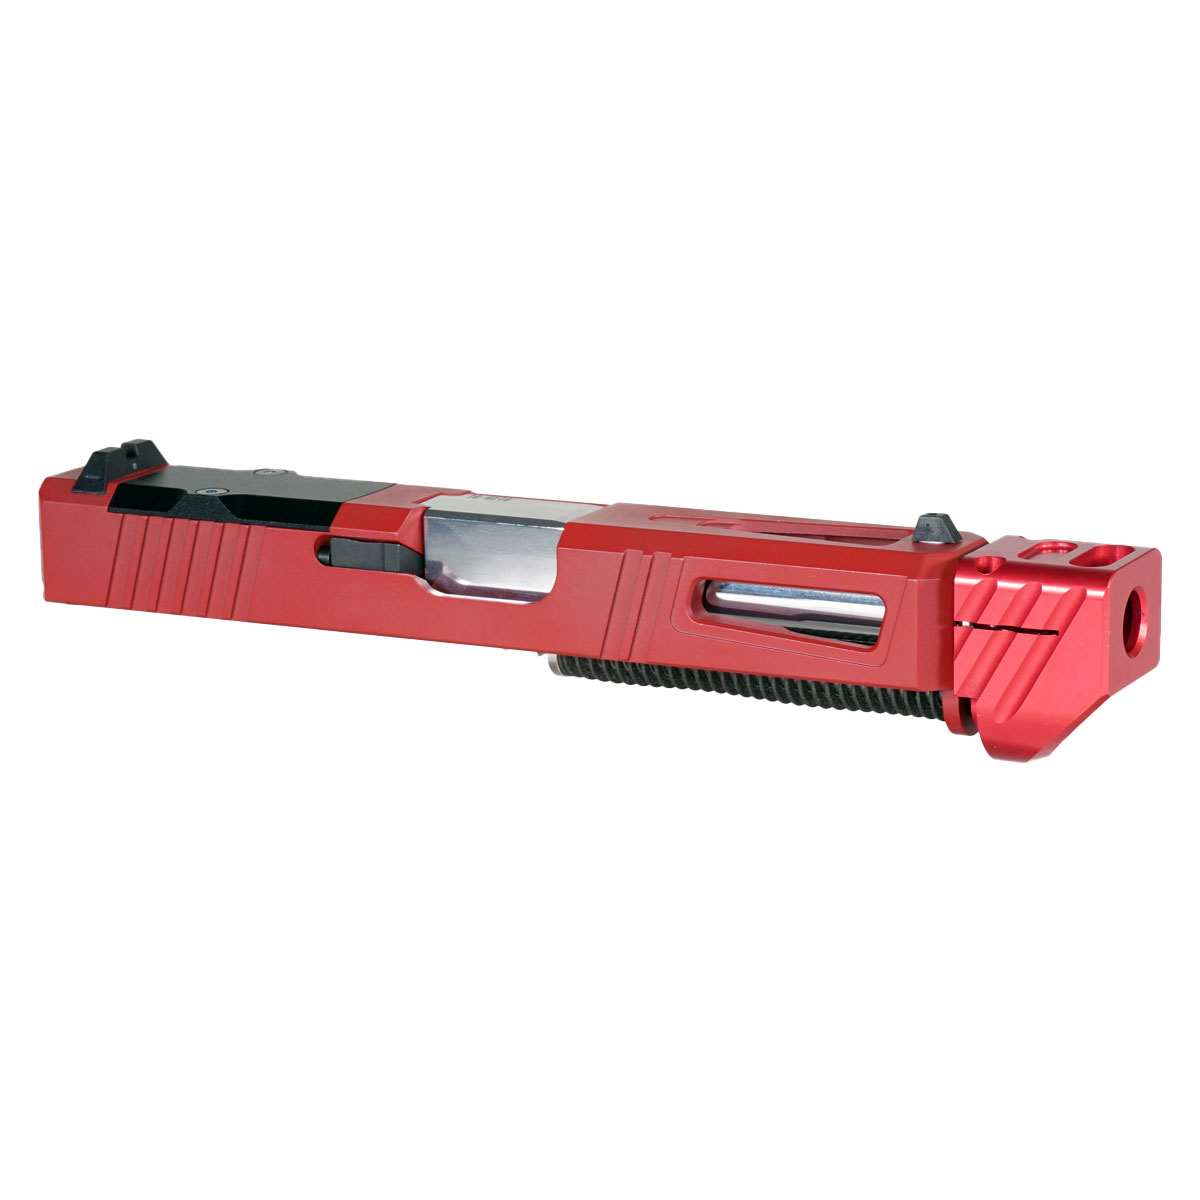 DDS 'Pisa V3 w/ Red Compensator' 9mm Complete Slide Kit - Glock 19 Gen 1-3 Compatible